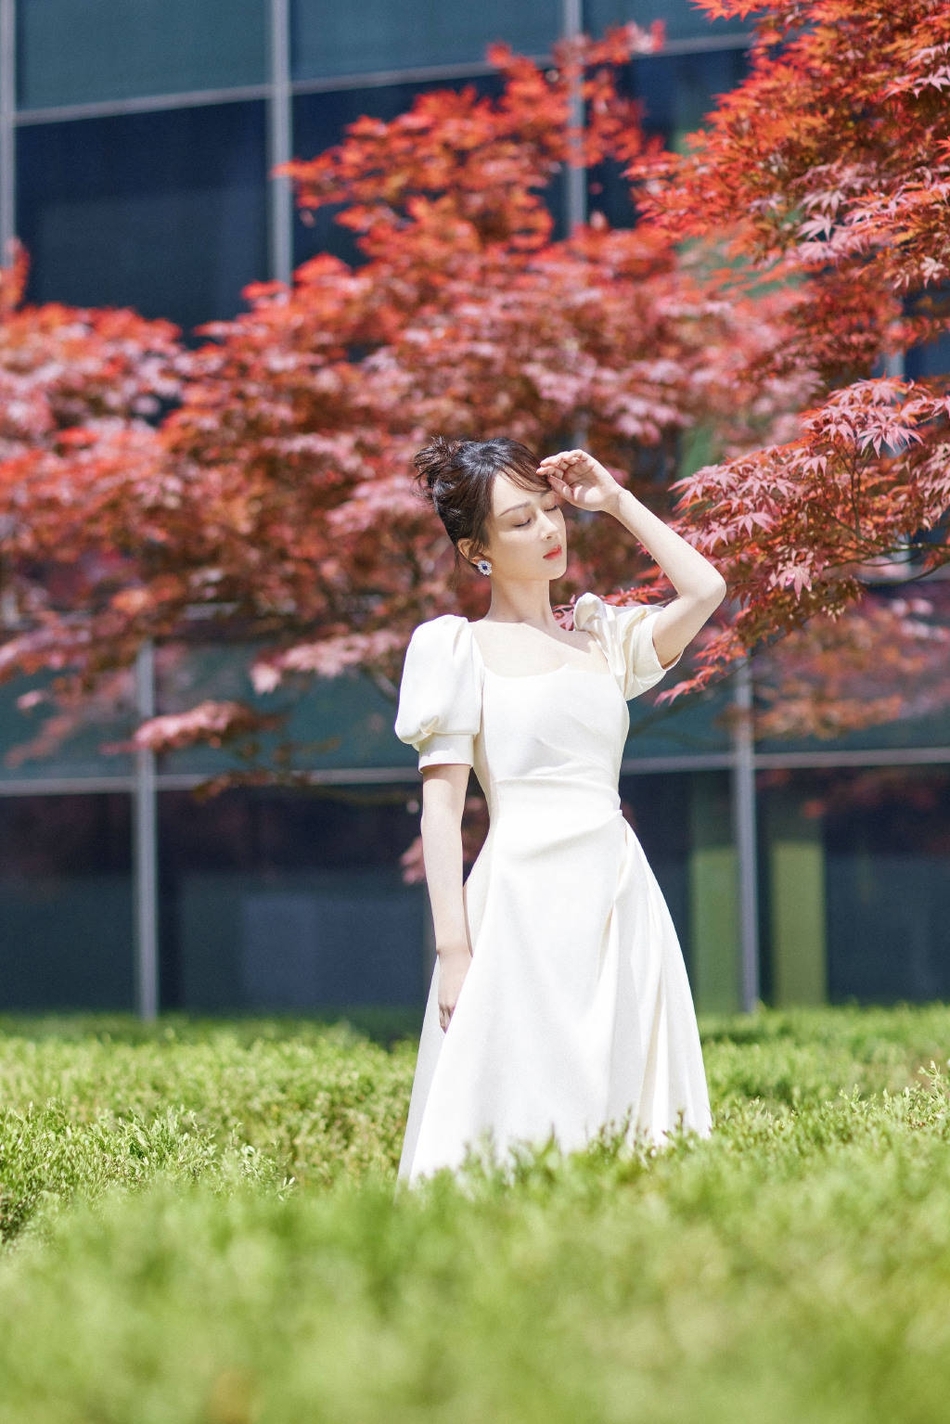 杨紫穿白裙置身红叶中 低头浅笑温婉可人